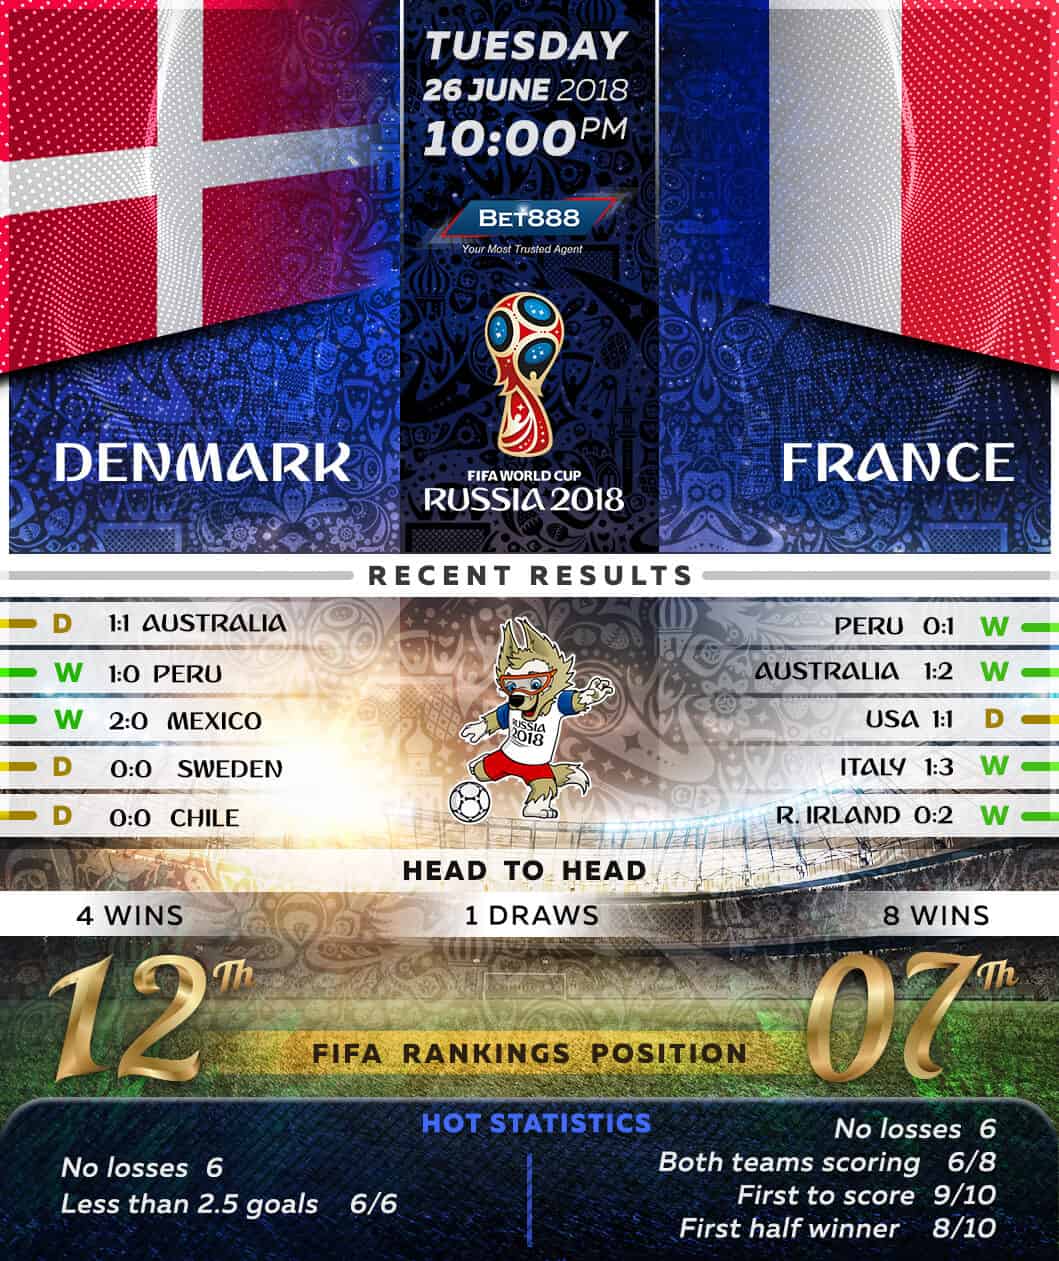 Denmark vs France 26/06/18